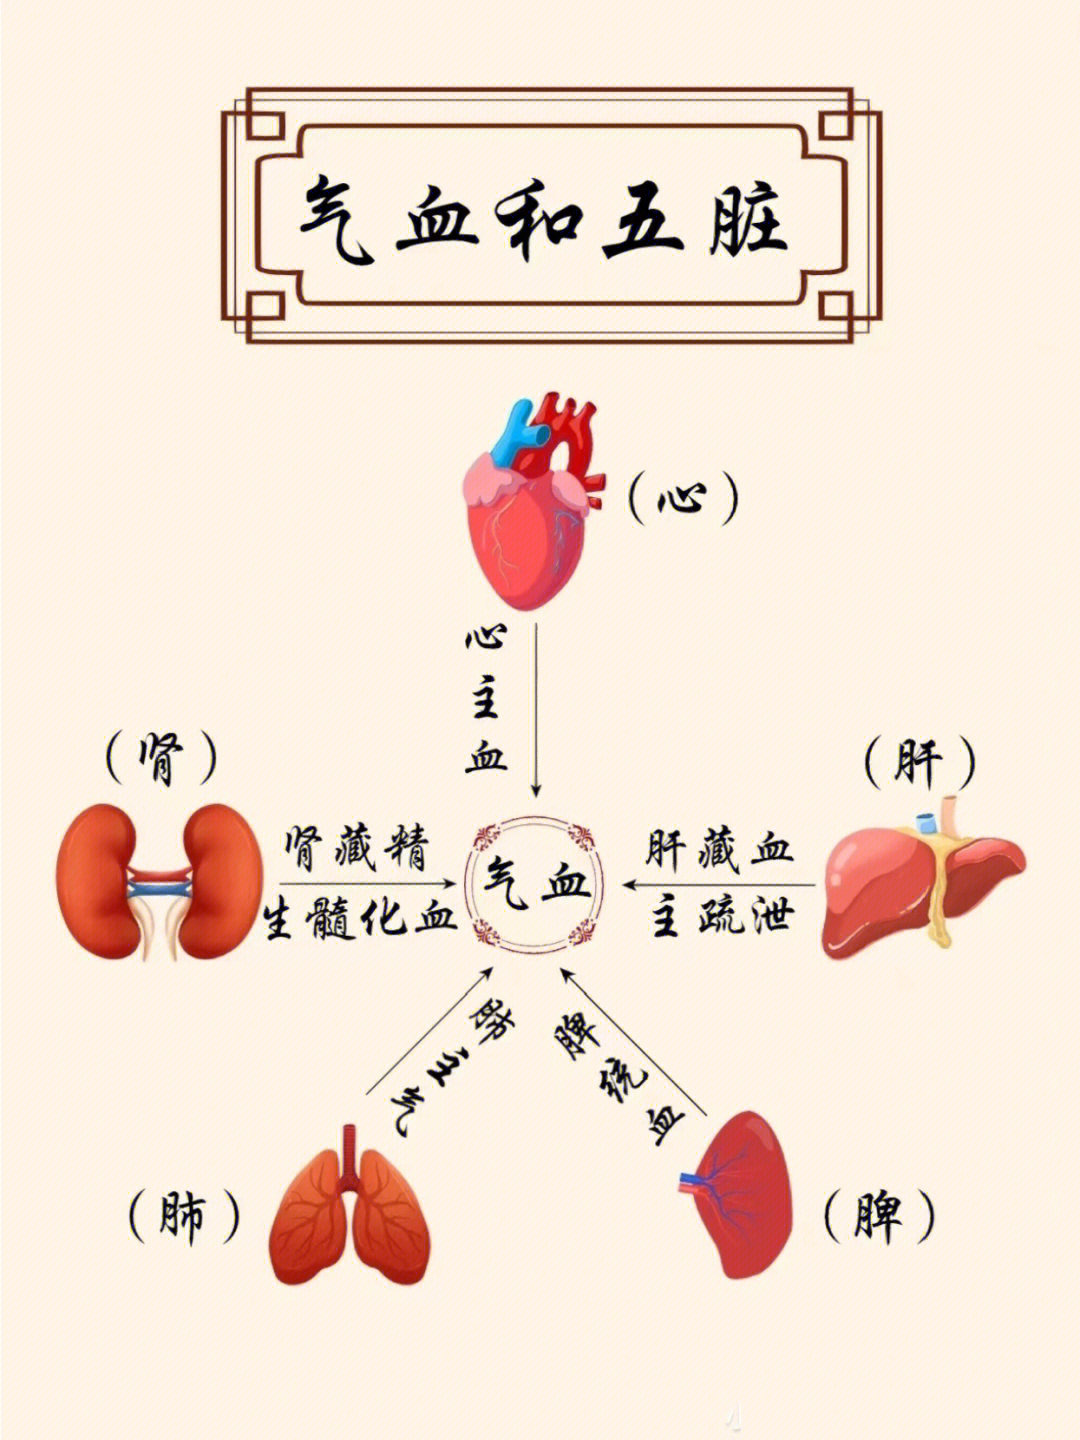 五脏气血循环示意图图片